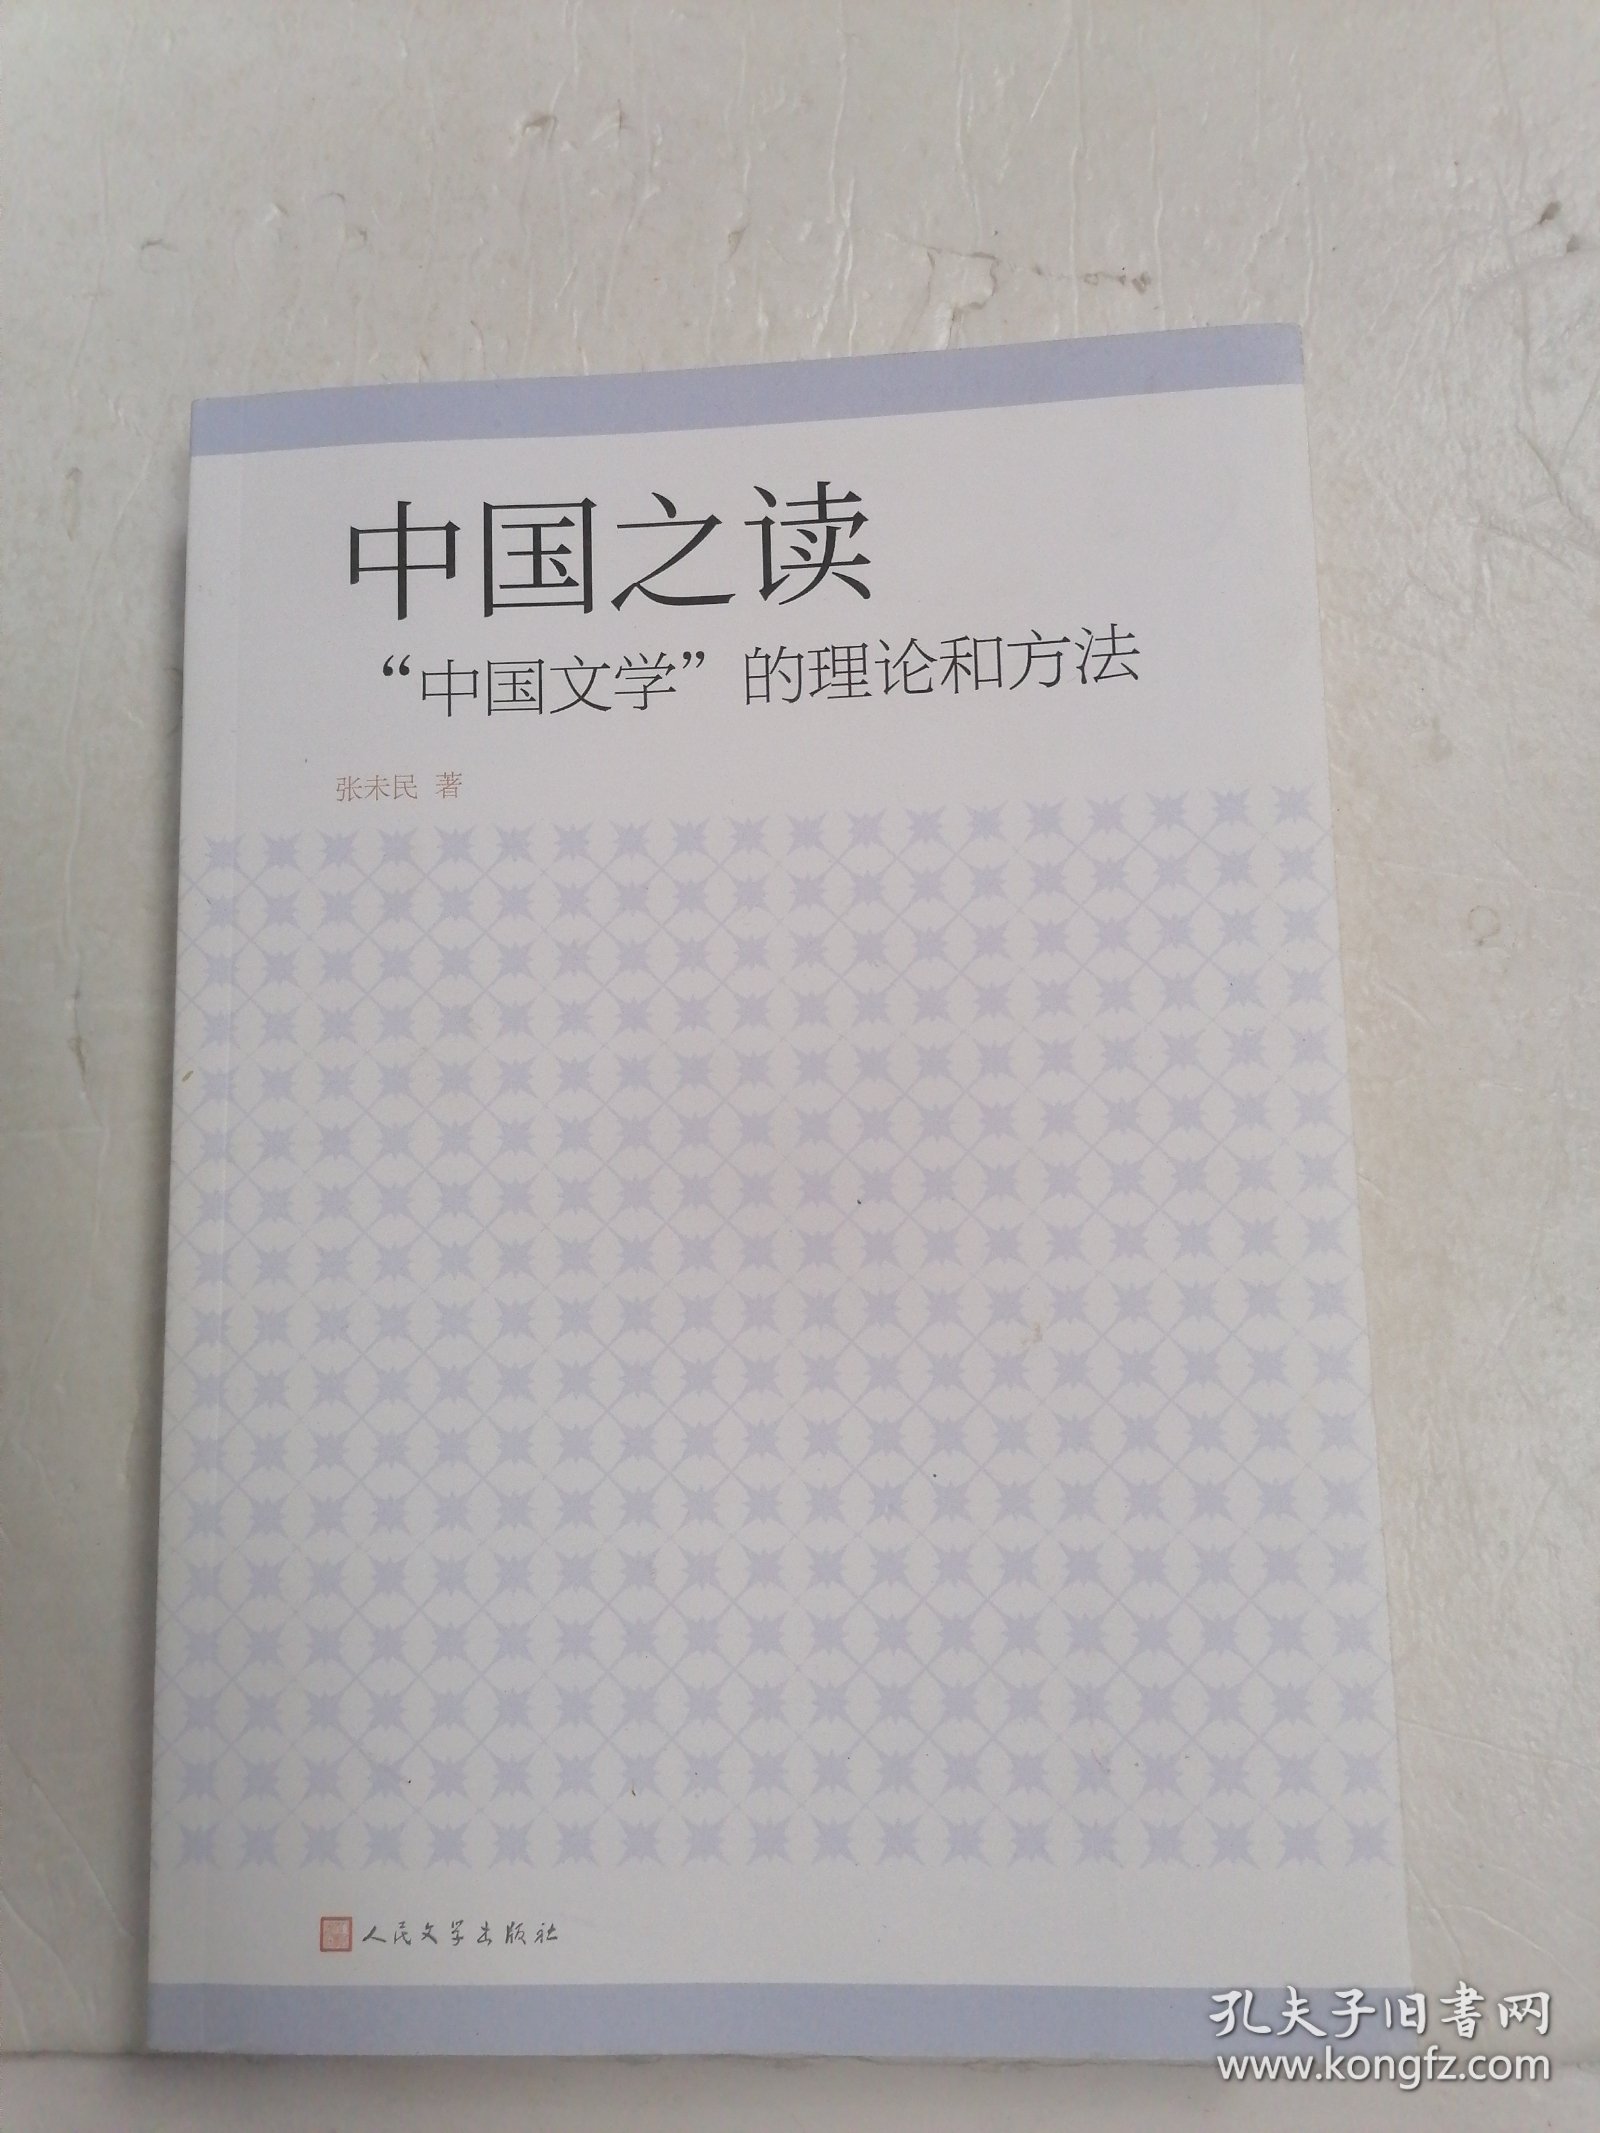 中国之读:“中国文学”的理论和方法 张未民 签名本